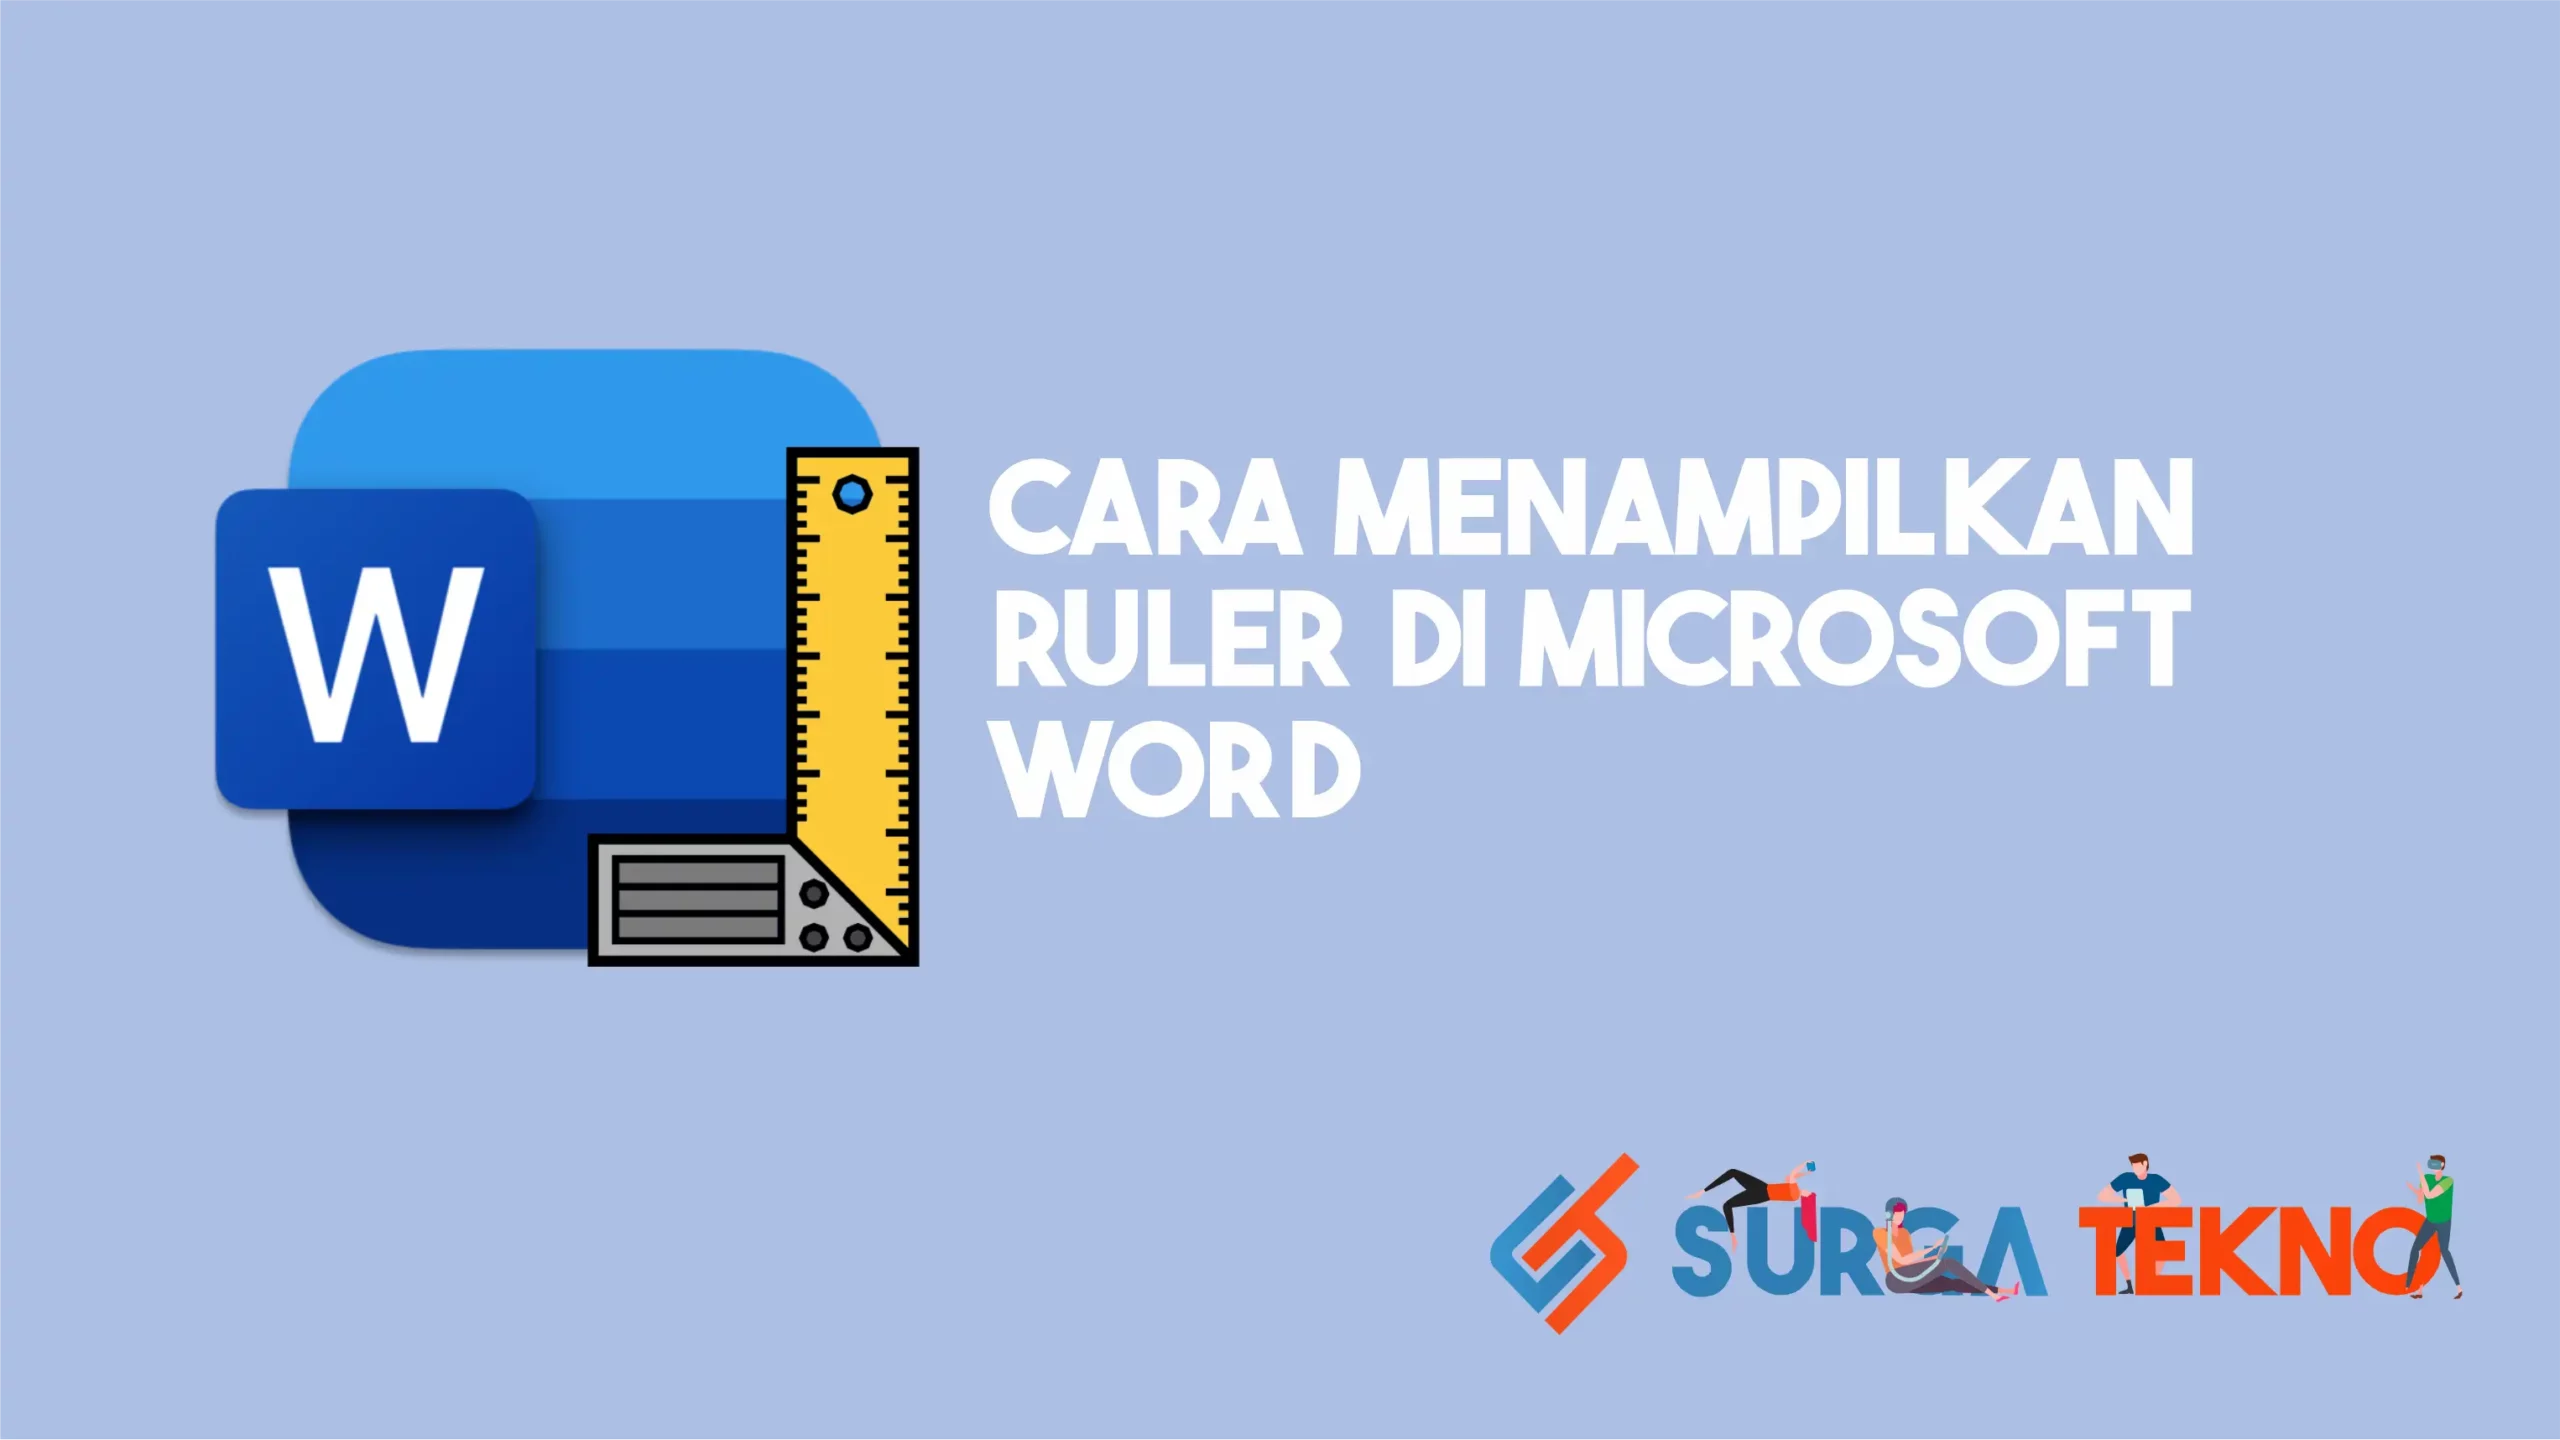 Cara Menampilkan Ruler di Microsoft Word